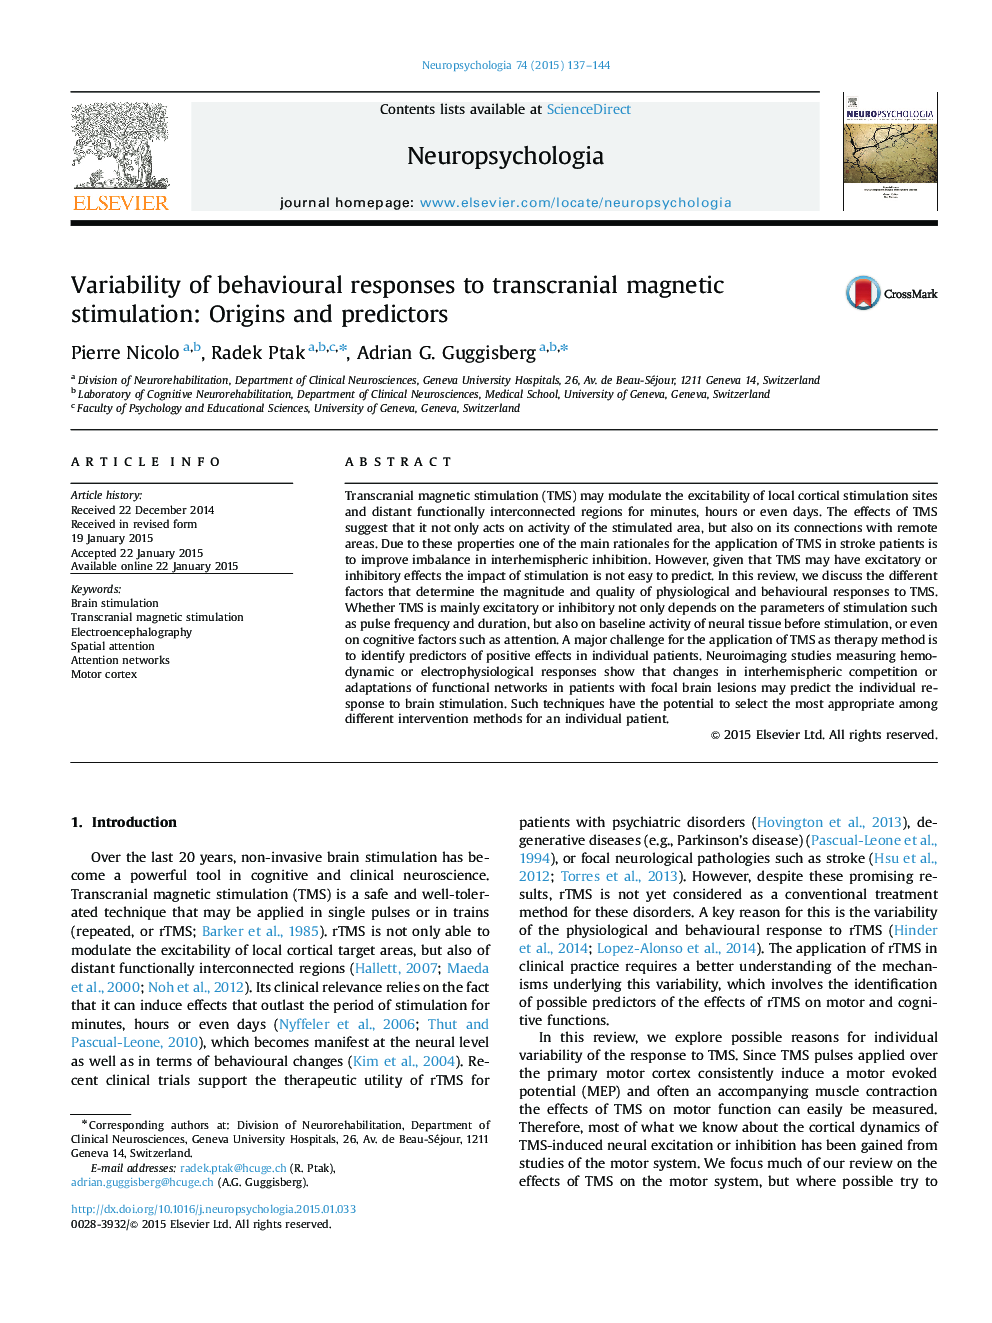 تنوع پاسخ های رفتاری به تحریک مغناطیسی ترانس مغناطیسی: ریشه ها و پیش بینی کننده ها 